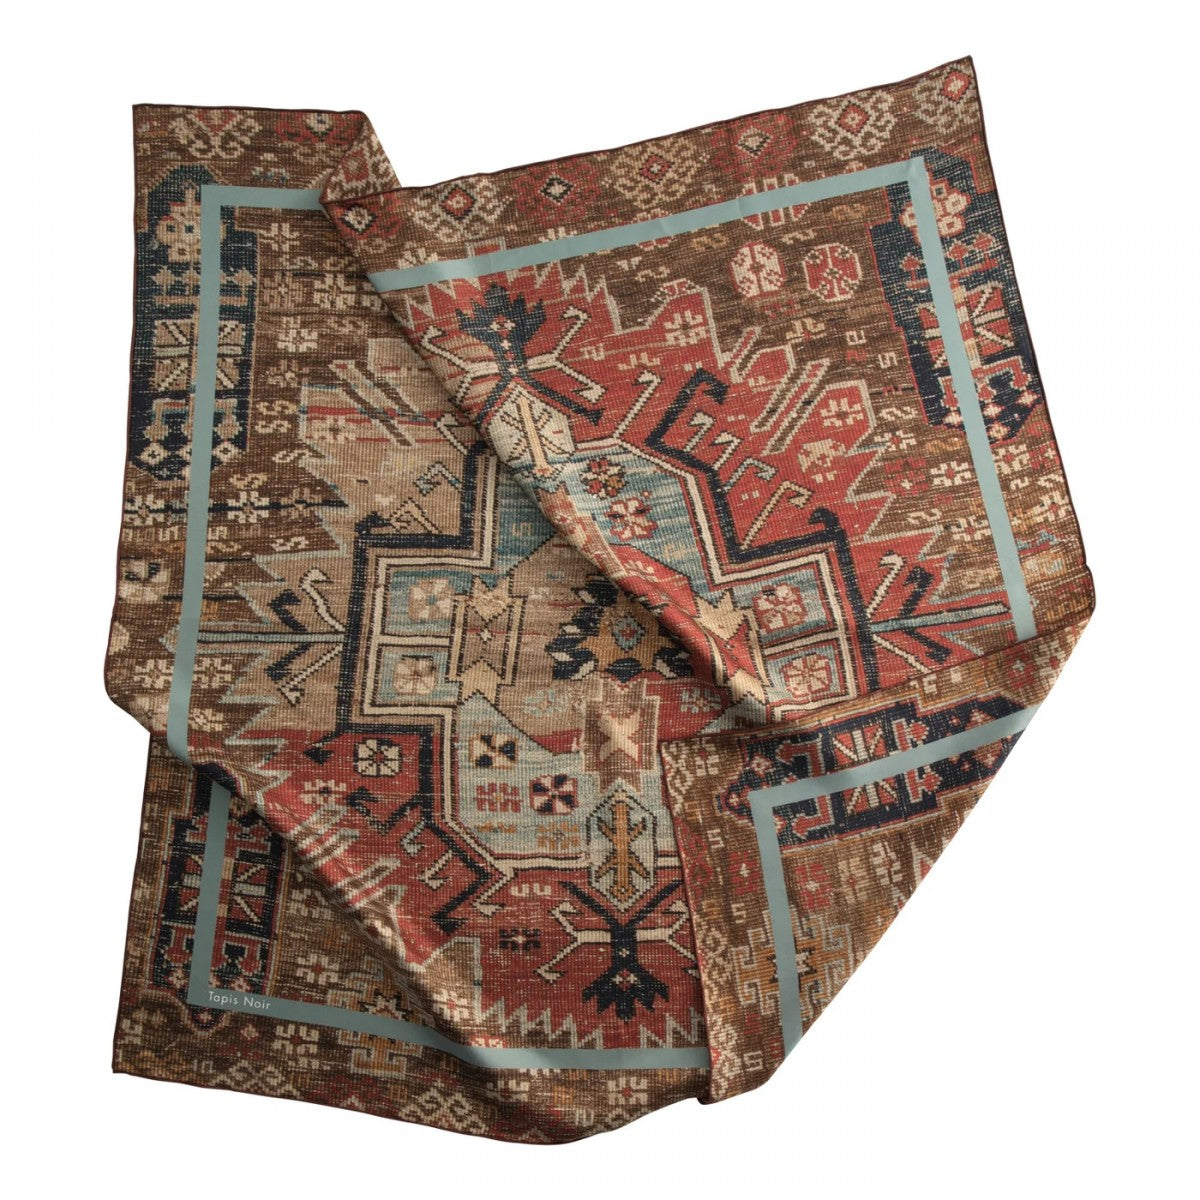 Tapis Noir Klassisk Persisk Tørklæde